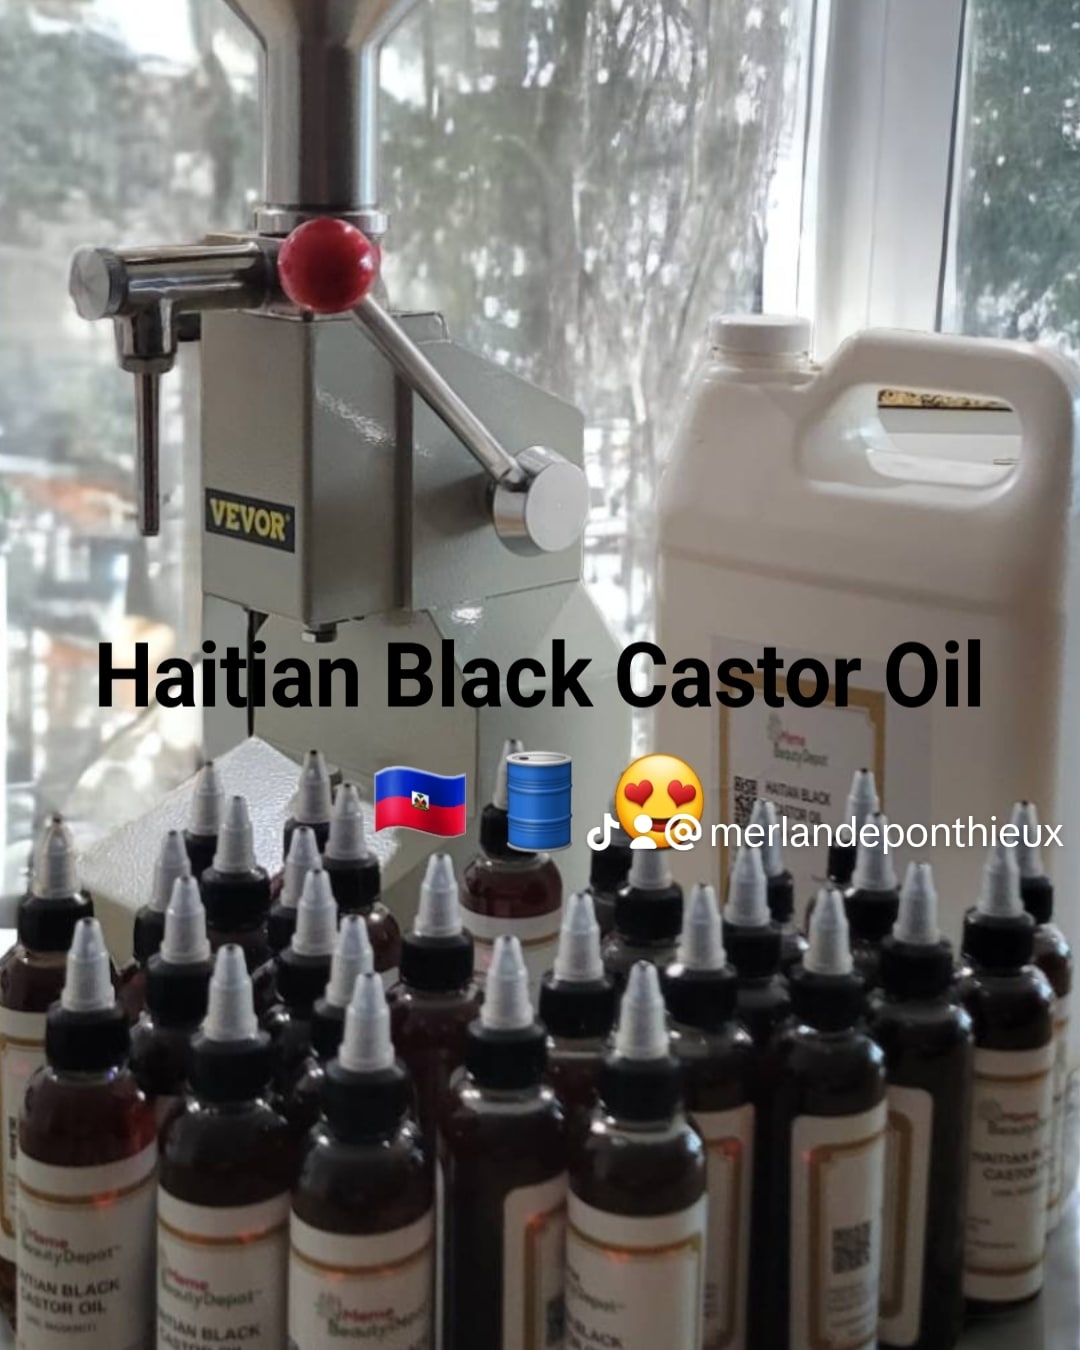 Haitian Black Castor Oil (lwil maskriti)